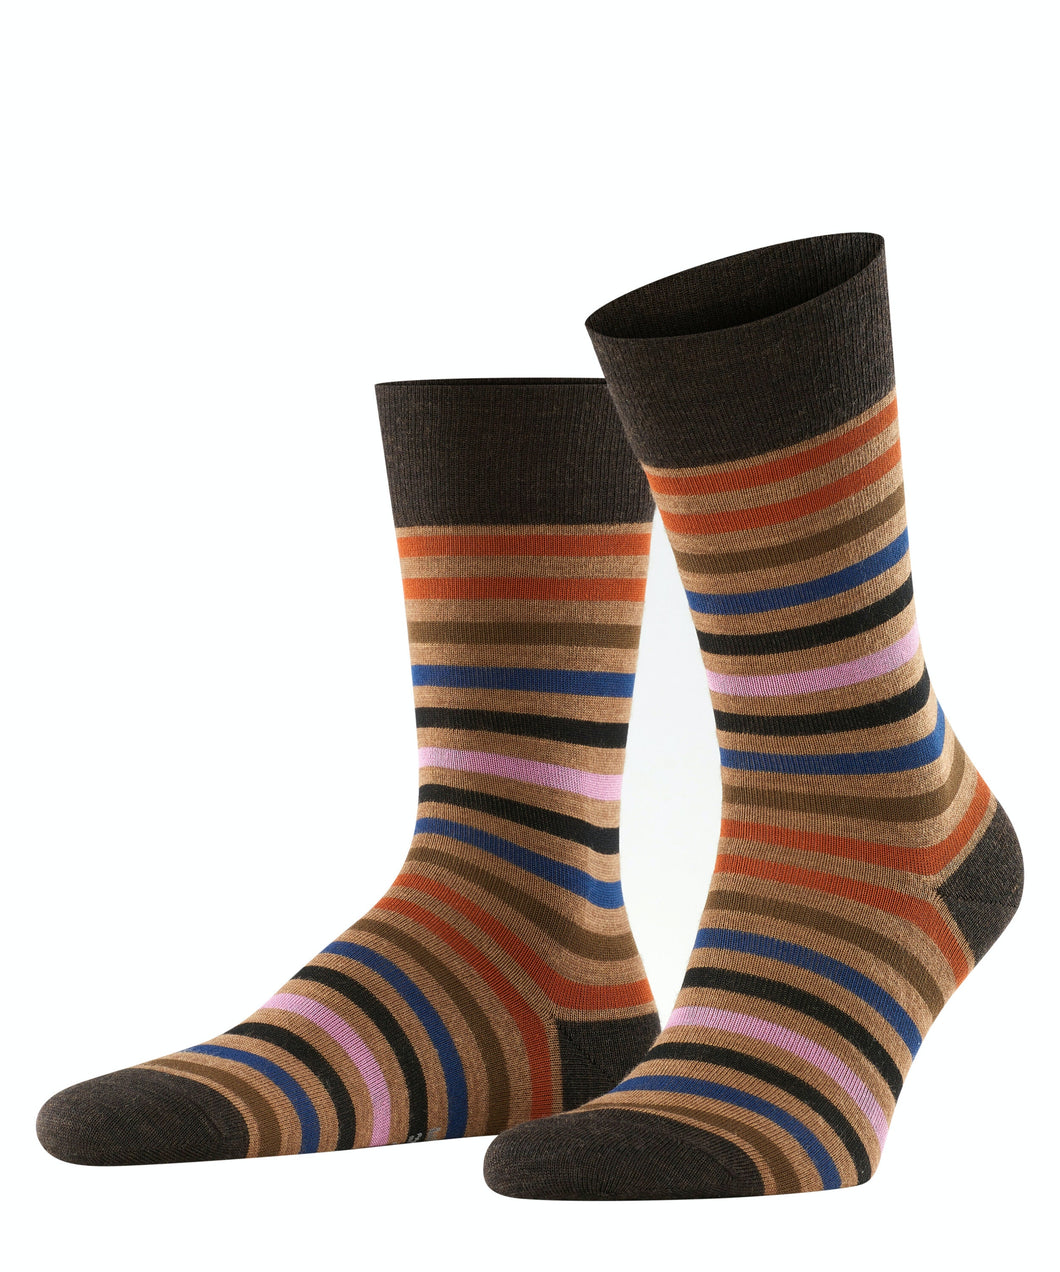 FALKE Tinted Stripe Socks in Dark Brown